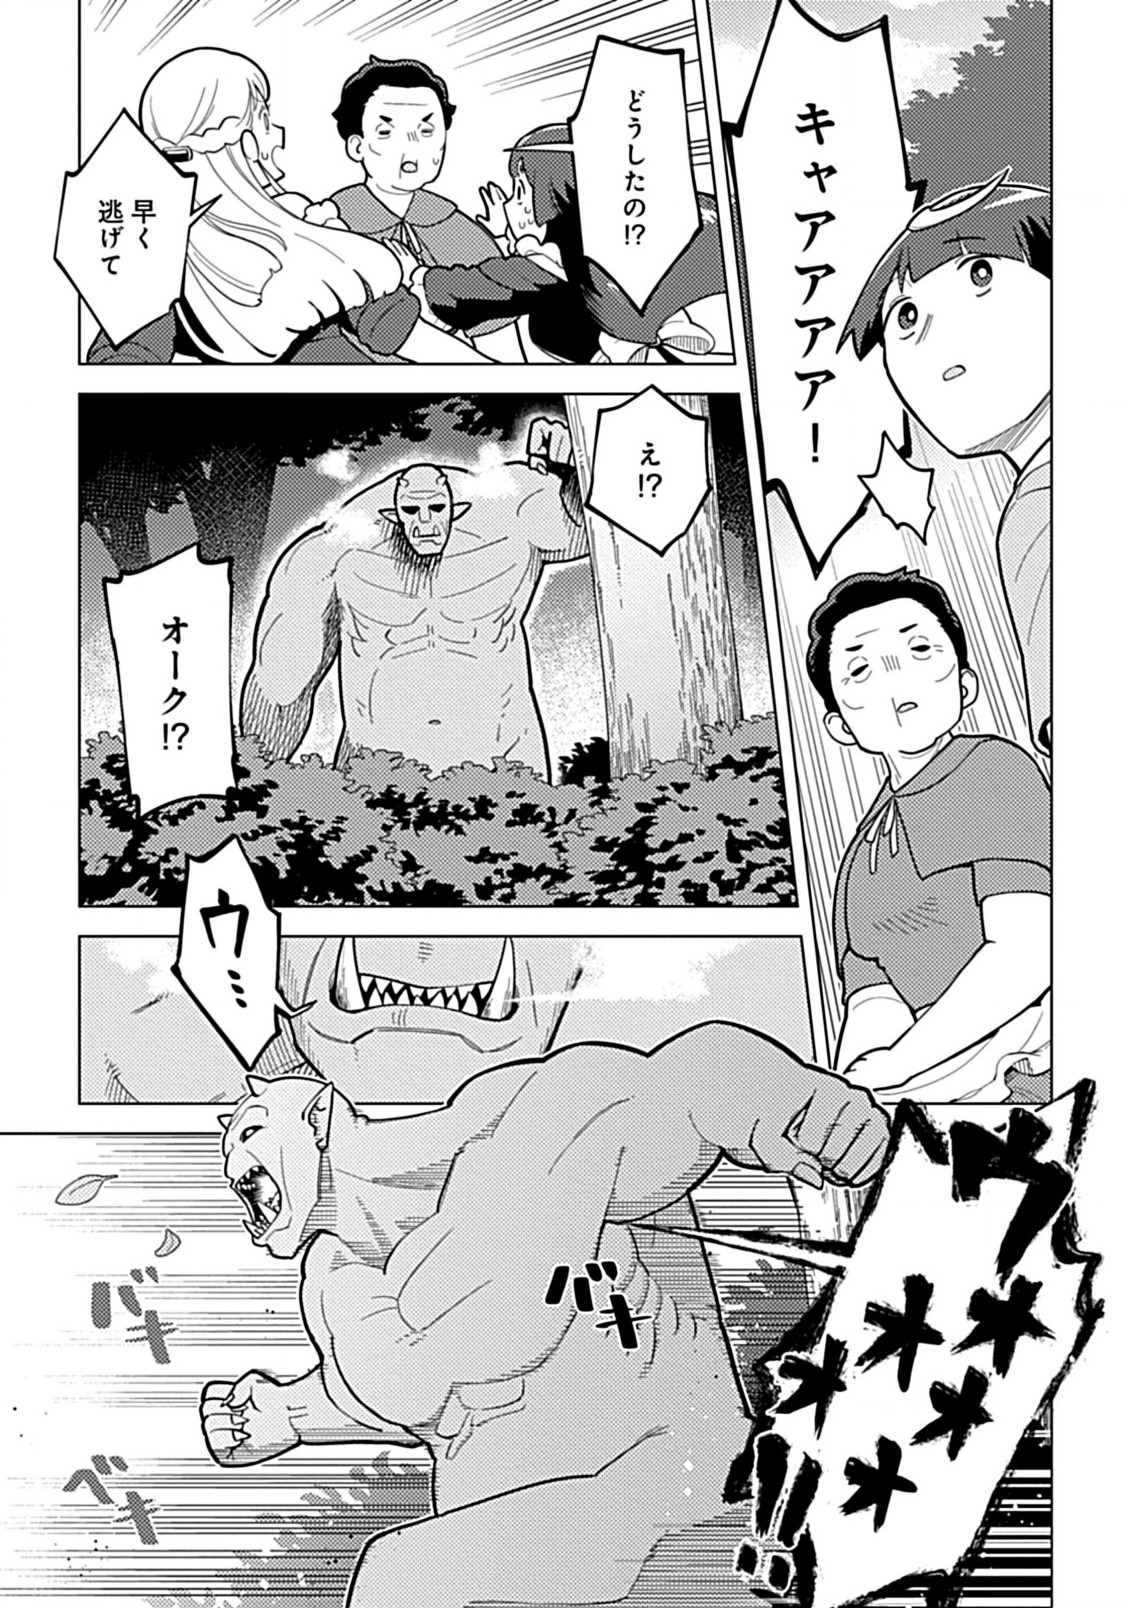 Hazure Skill Yohou ga Shinka Shite Ittara Jitsugen ni Naru Ken Renga Renga Renga! de Slow Life Shitemasu - Chapter 2.2 - Page 1